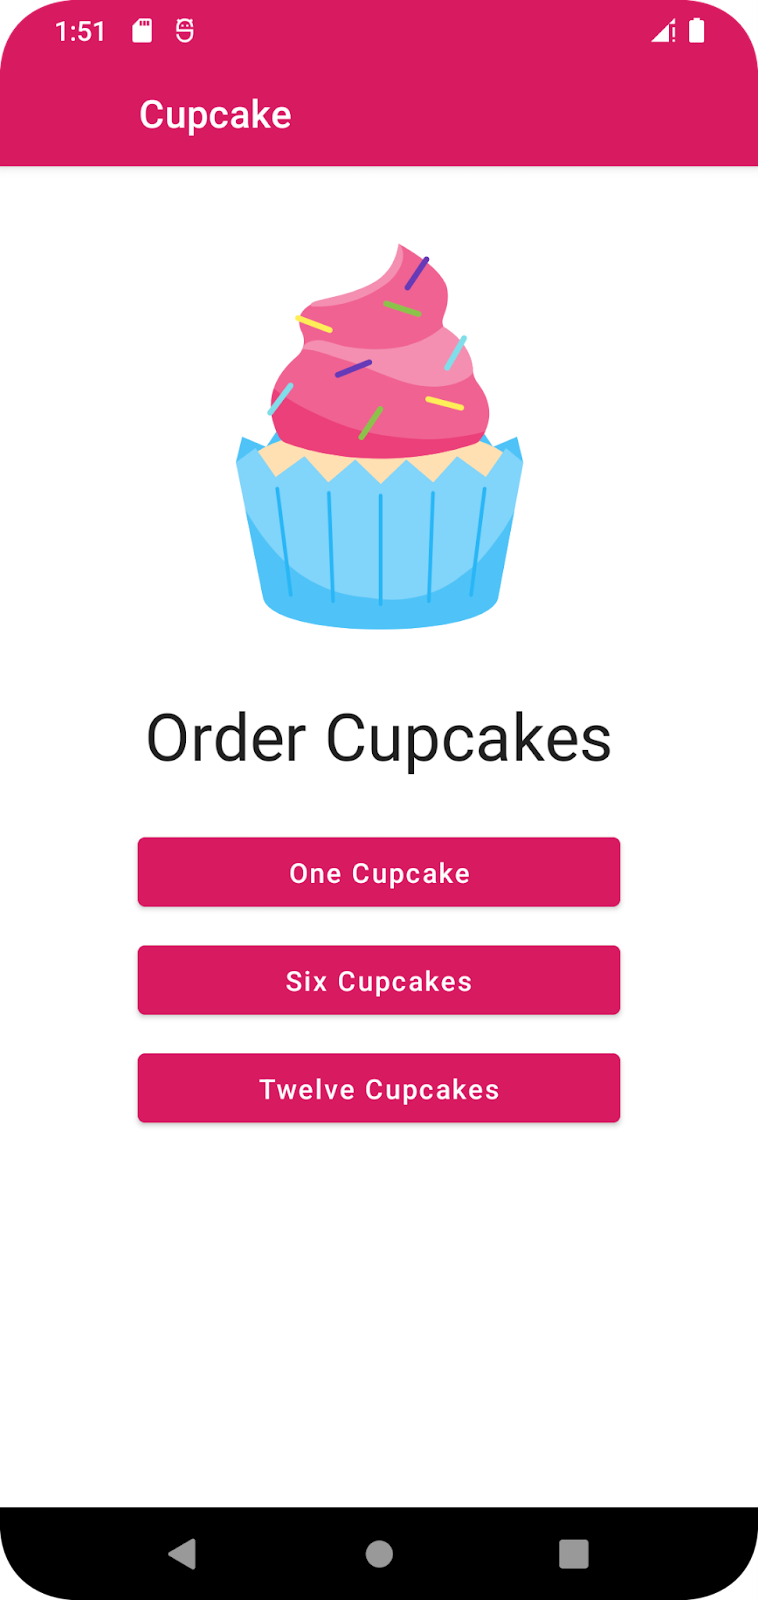 Cupcake 应用的第一个屏幕，提供开始订购一个、六个或十二个纸杯蛋糕的选项。